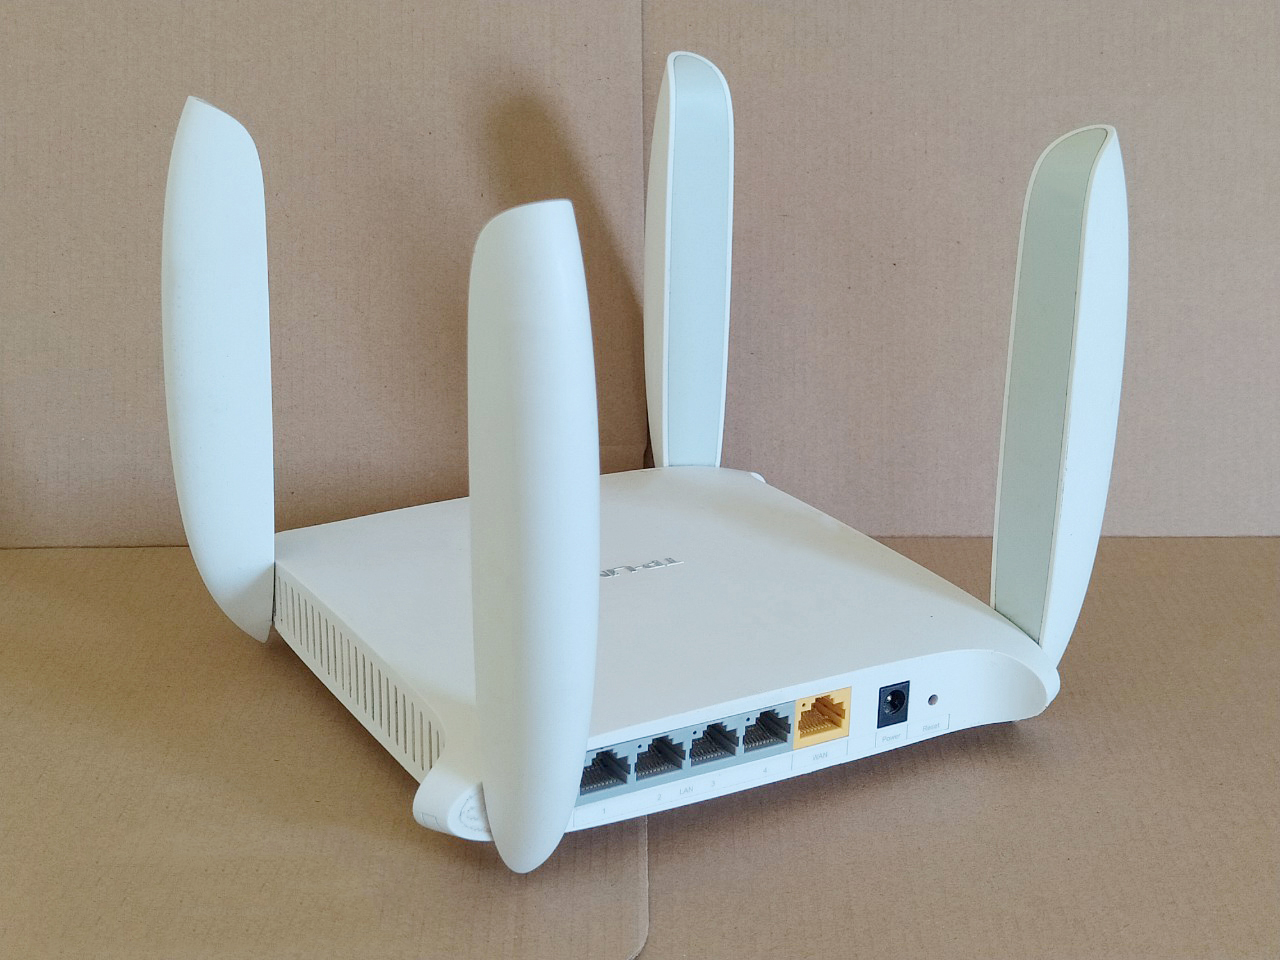 Bộ phát WiFi TP-LINK 4 Dâu WDR 6320 Băng tần kép tốc độ cao, hỗ trợ xuyên tường, cài đặt sẵn cắm vào là dùng được ngay